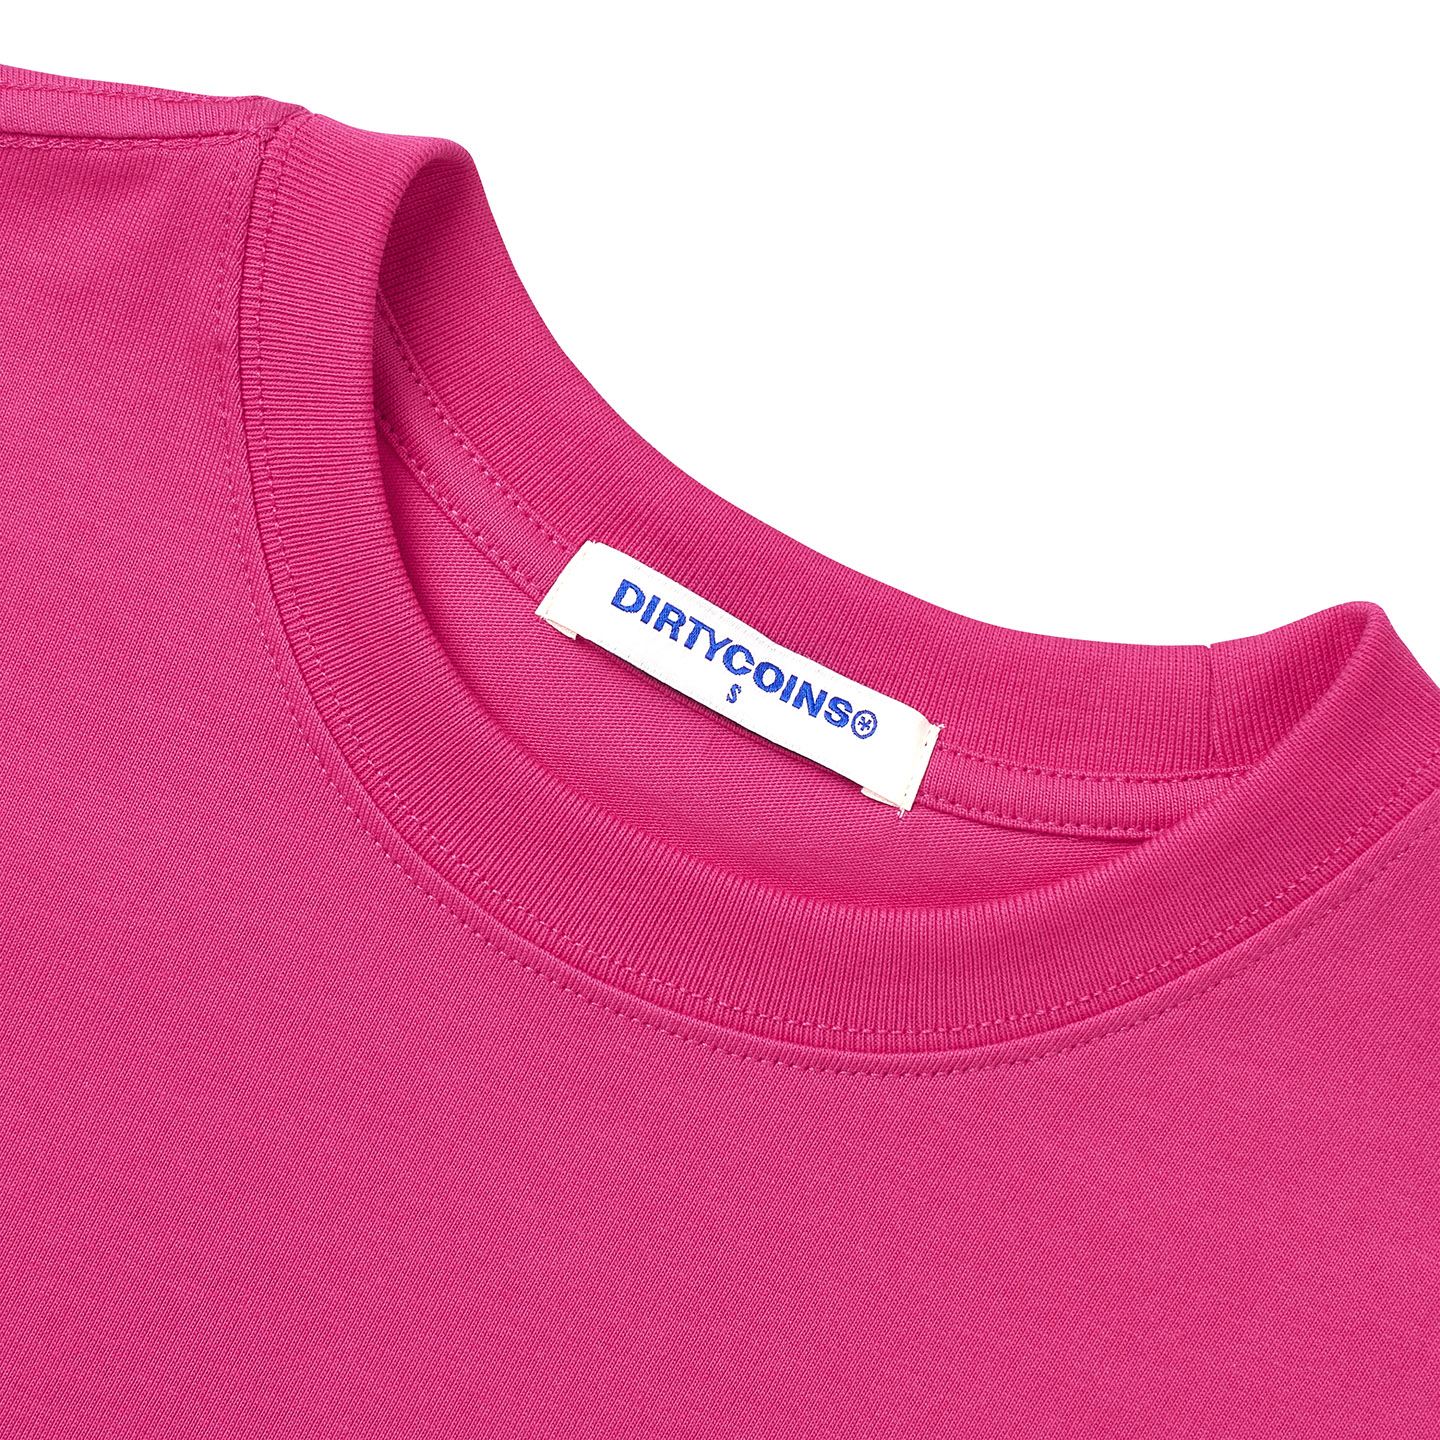 Áo Thun DirtyCoins Rope Print Regular Men/Women T-shirt - Hot Pink